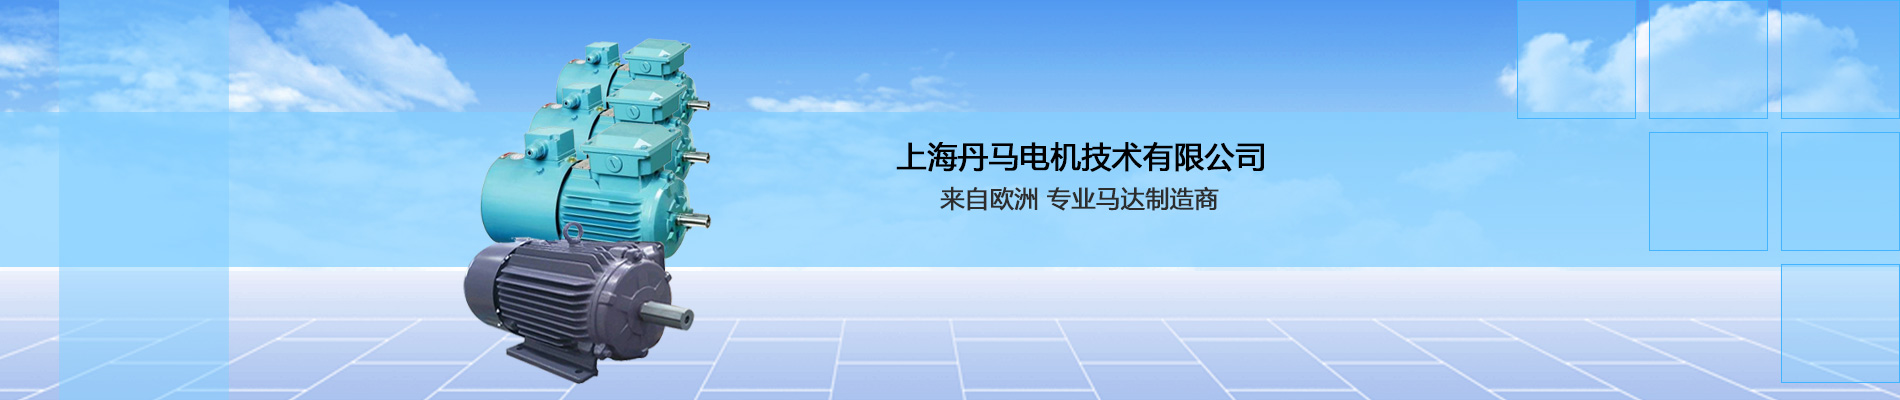 专业马达制造商_上海丹马电机技术有限公司